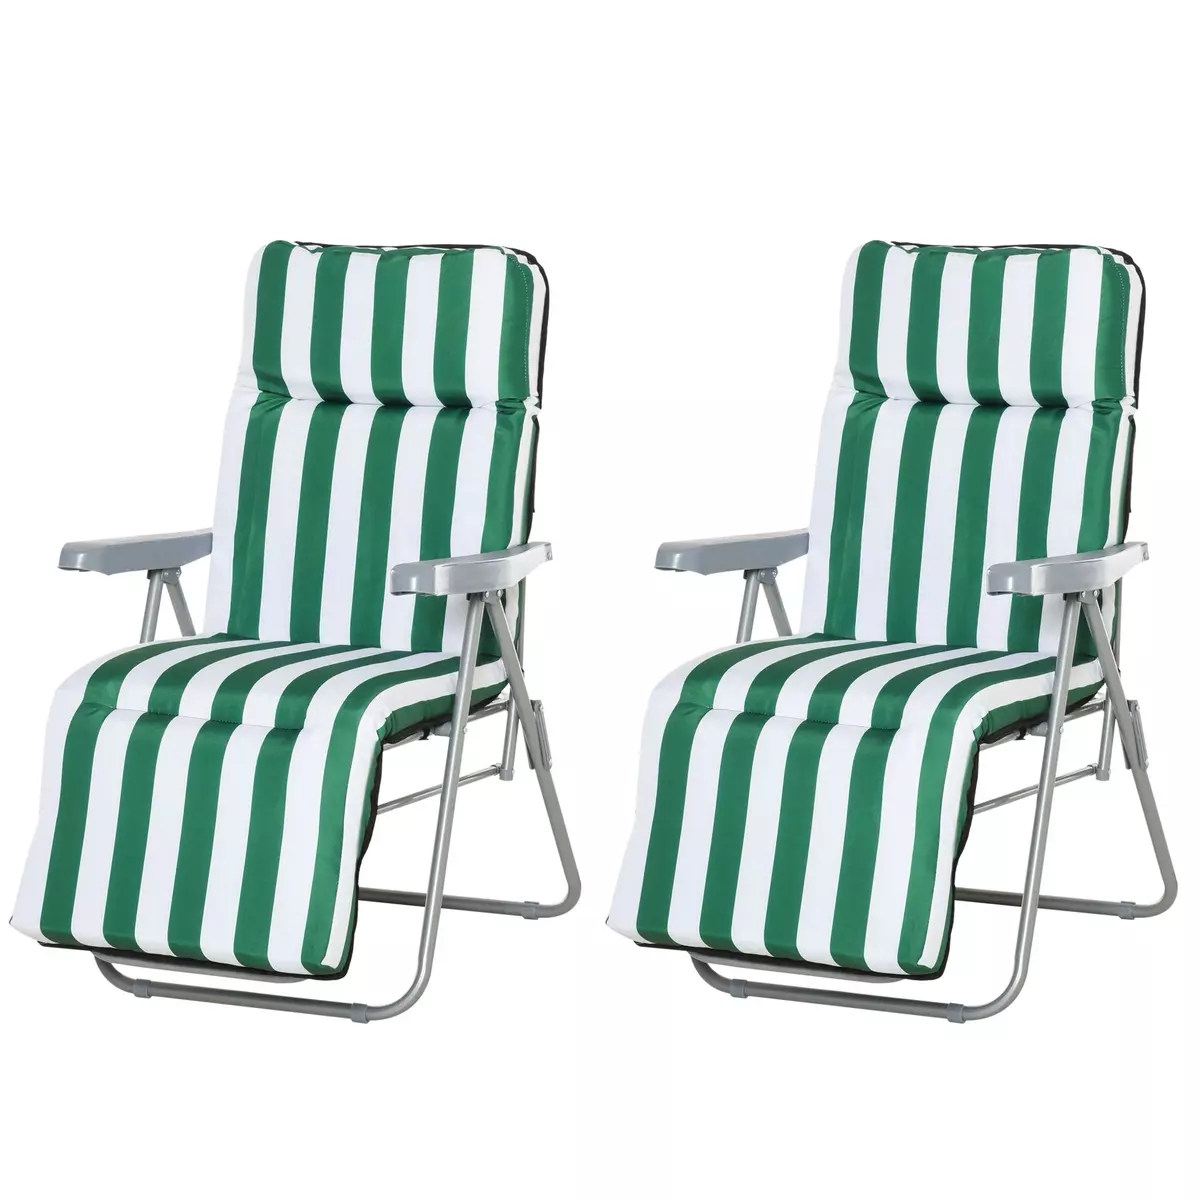 OUTSUNNY Lot de 2 chaise longue bain de soleil adjustable pliable transat lit de jardin en acier vert + blanc